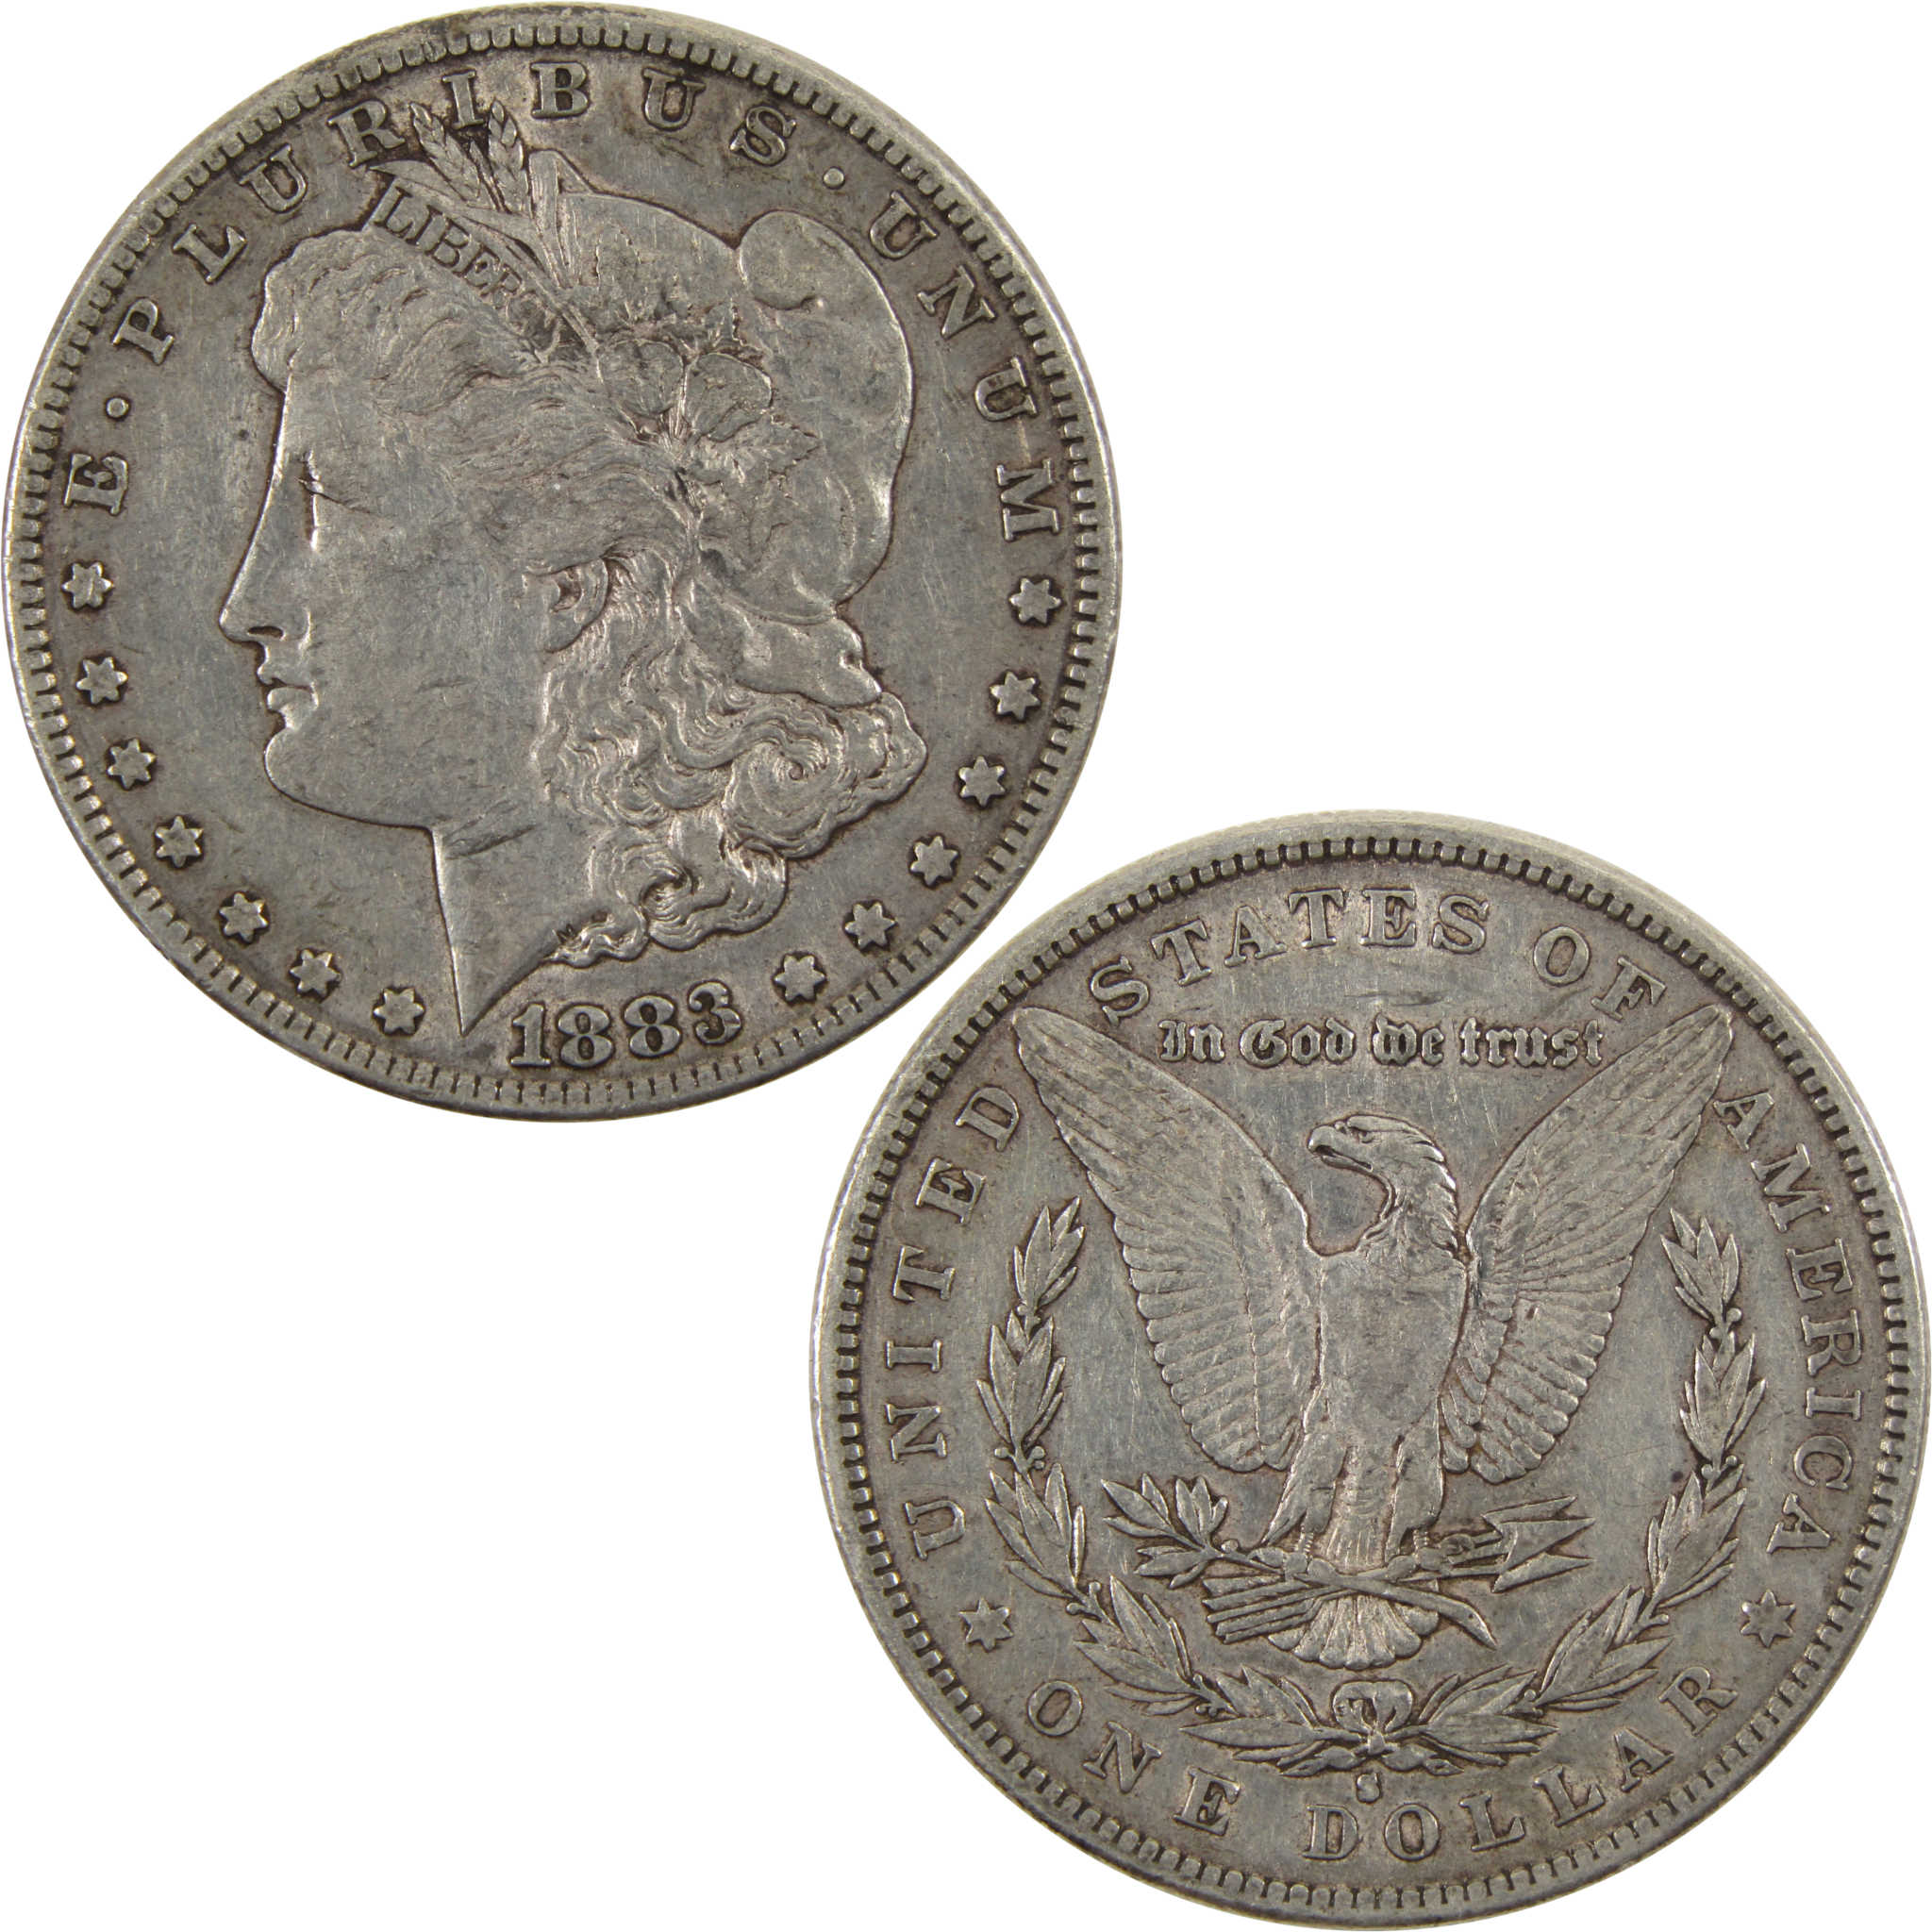 1883 S Morgan Dollar VF/XF 90% Silver $1 SKU:I9171 - Morgan coin - Morgan silver dollar - Morgan silver dollar for sale - Profile Coins &amp; Collectibles